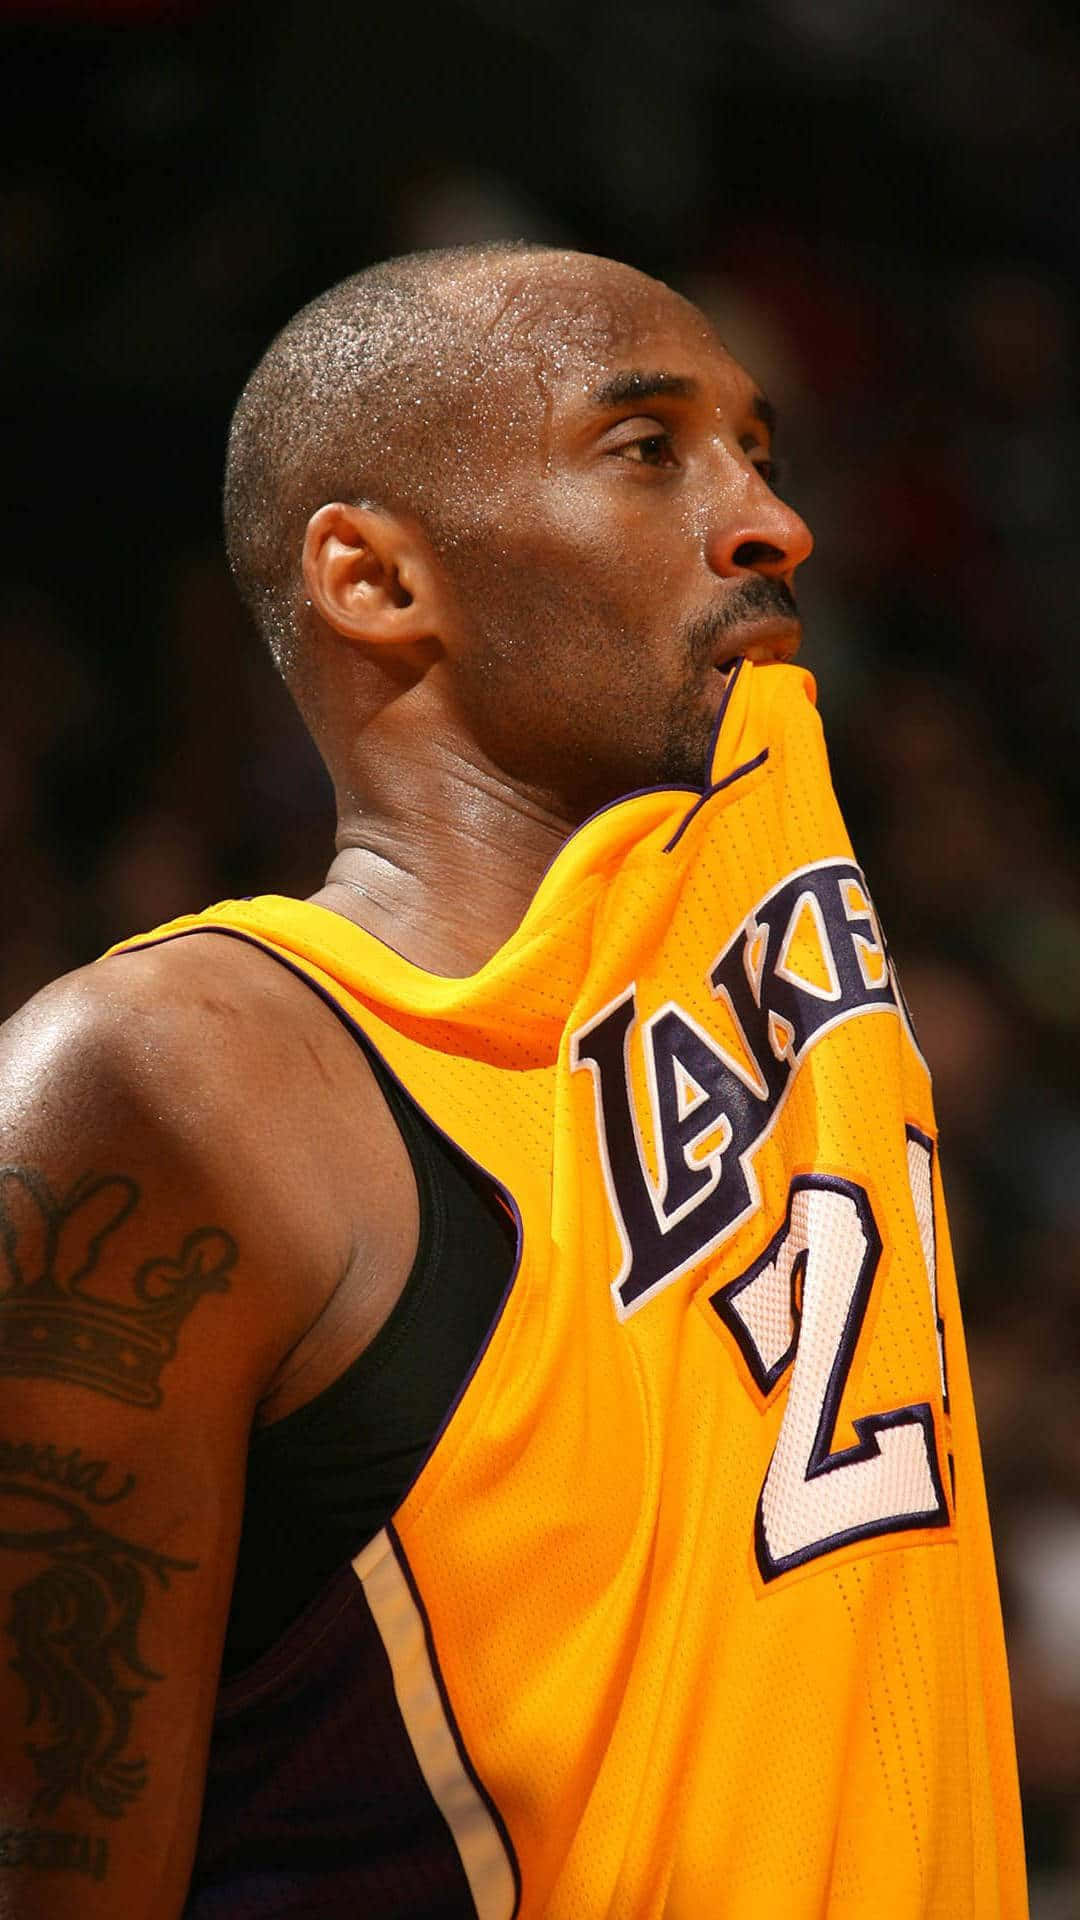 Kobe Bryant’s legacy lives on